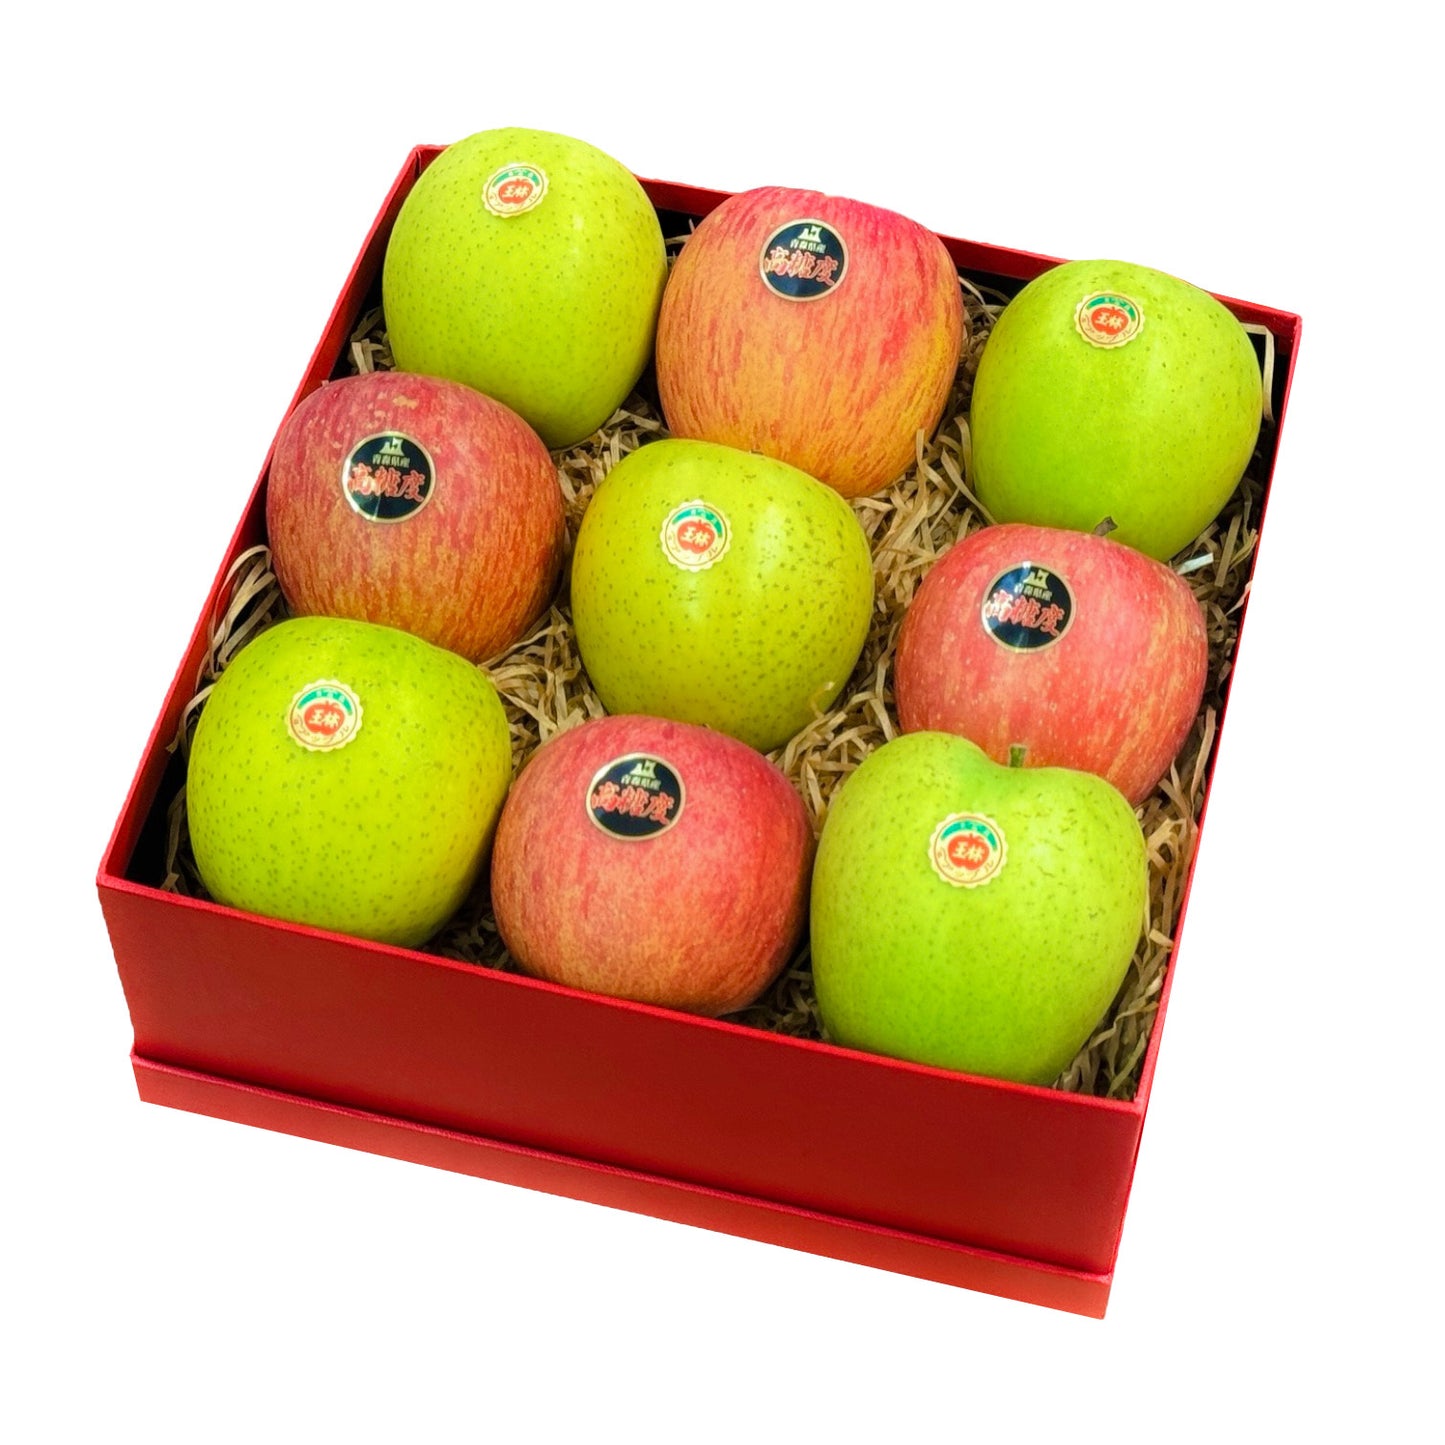 MAF2415 中秋水果盒 